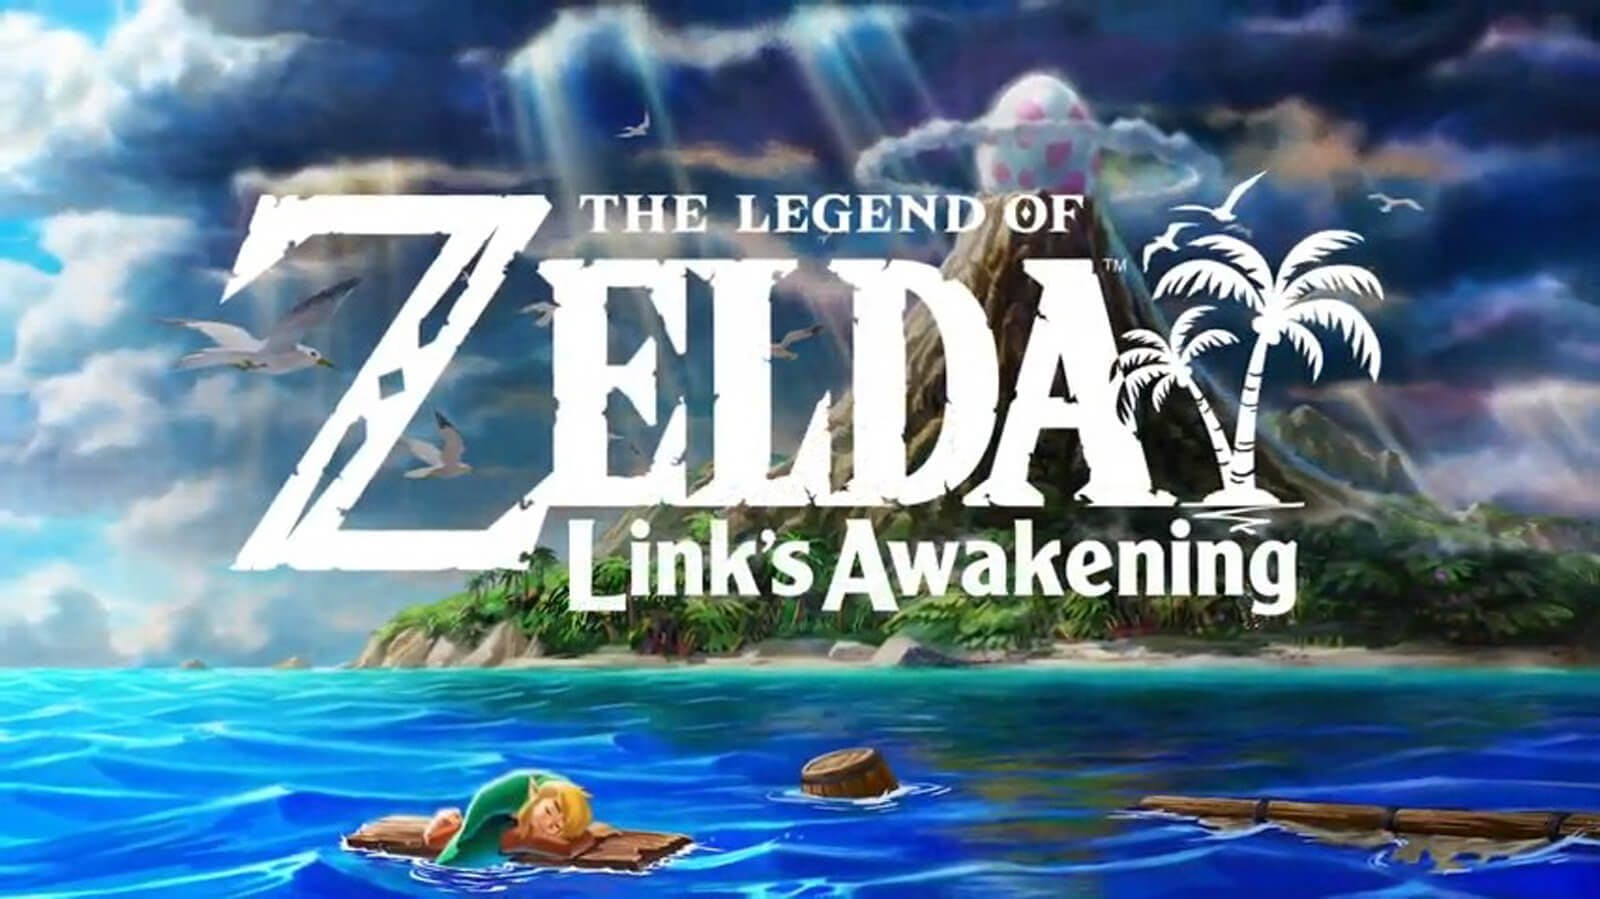 The Legend of Zelda: Link's Awakening Review: A Dream Come True